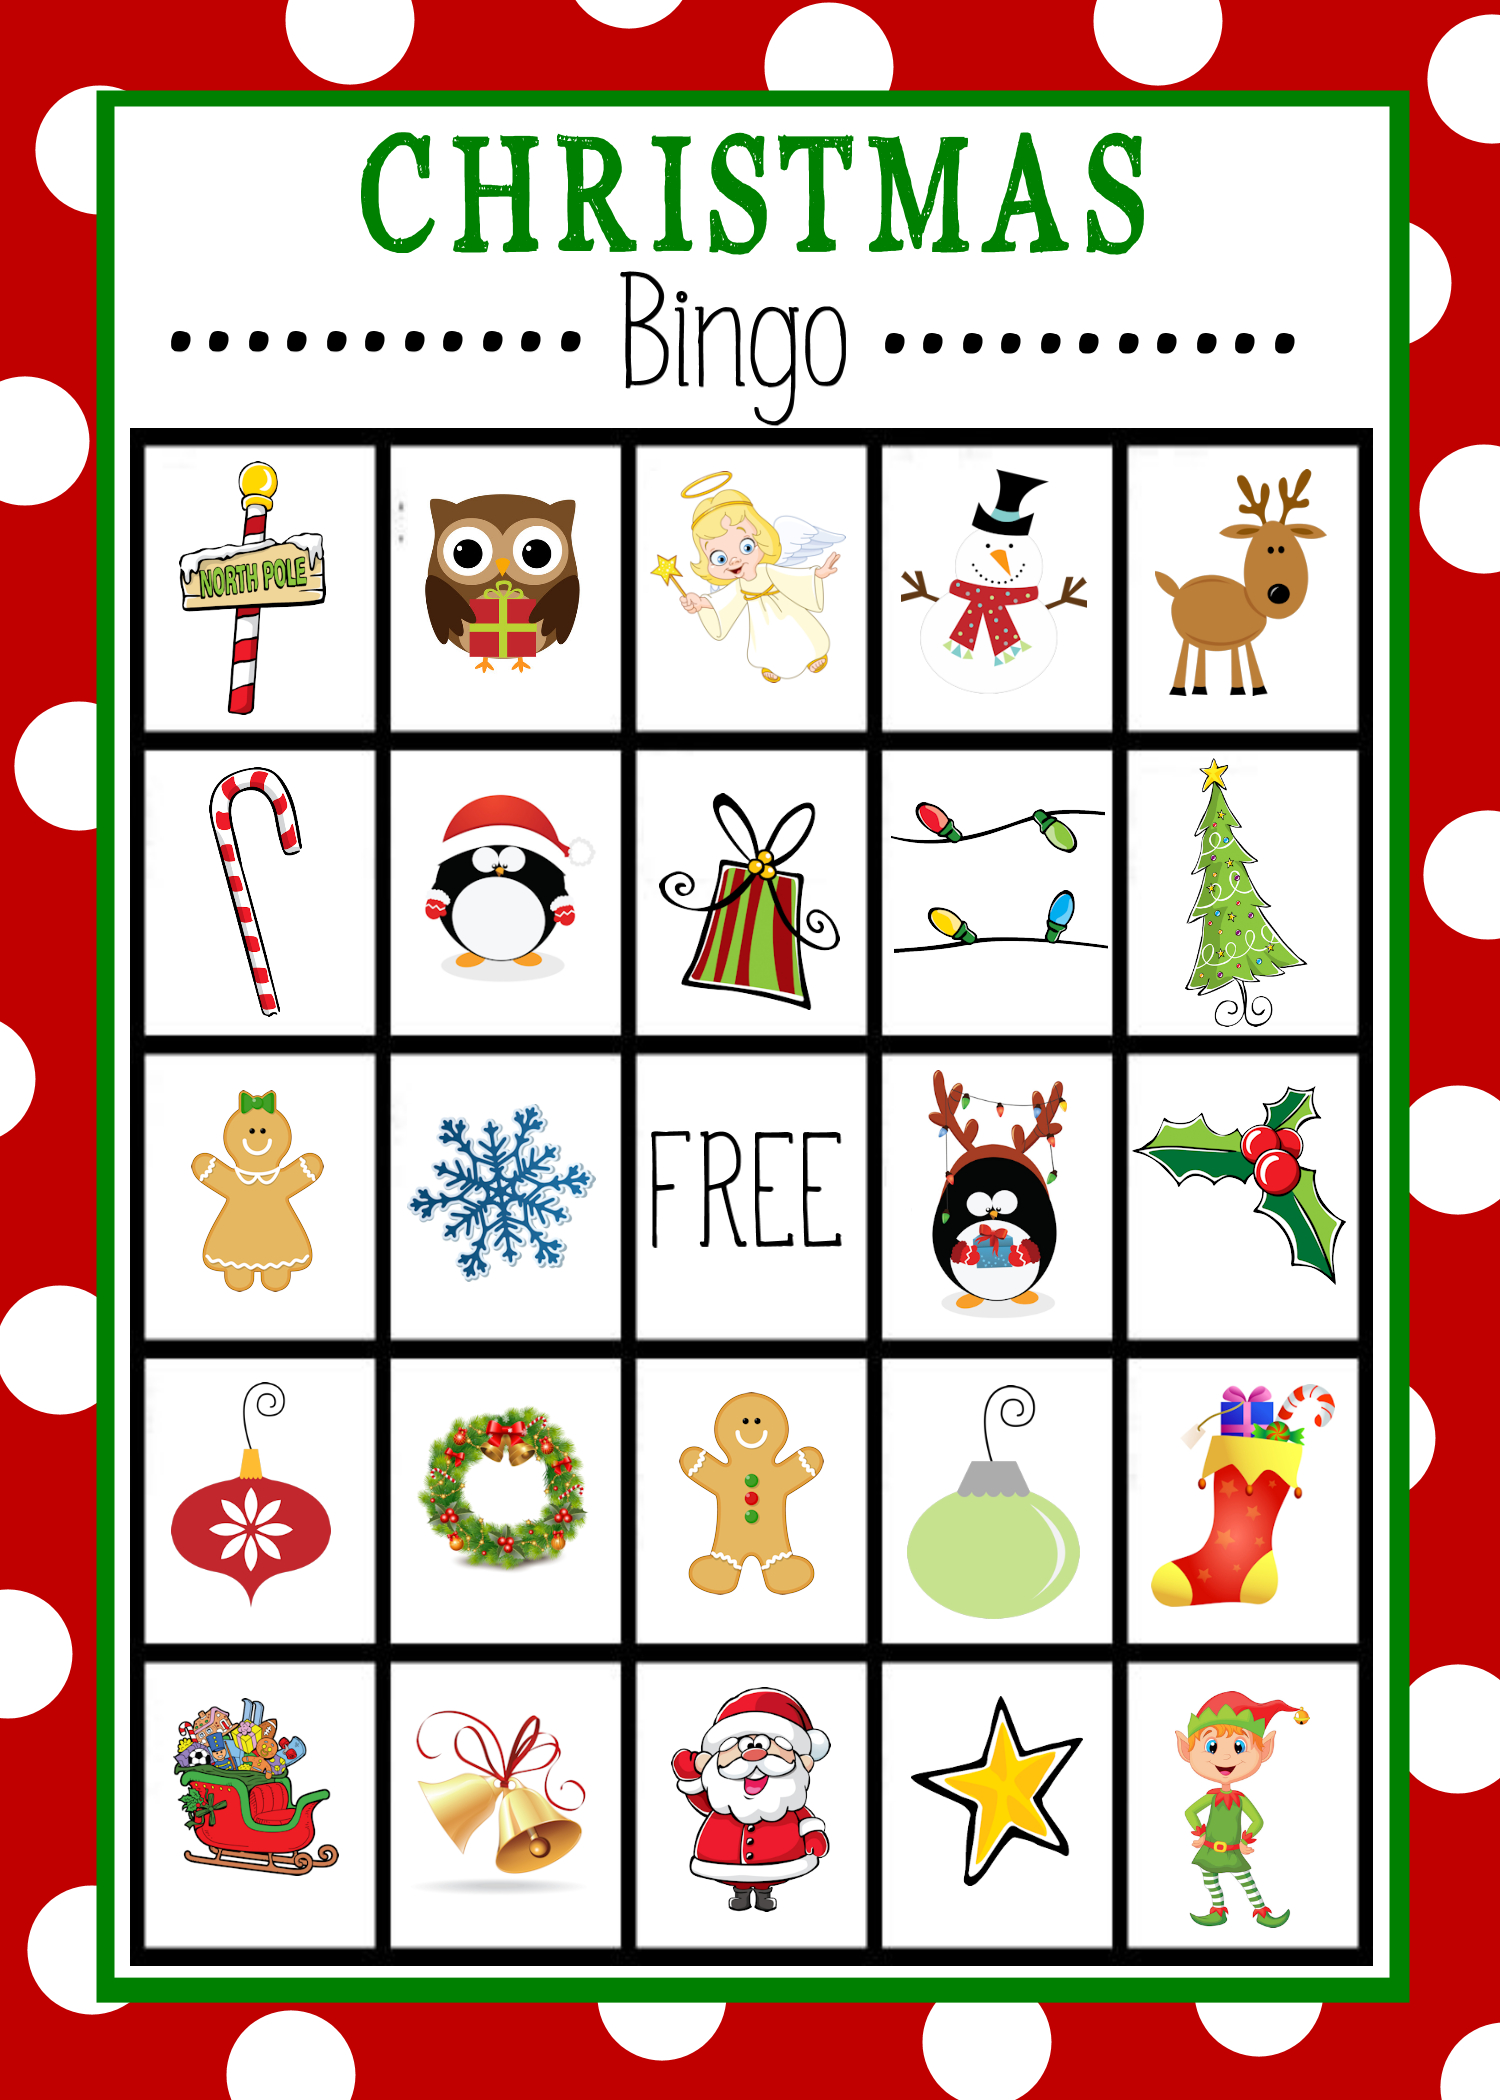 Free Printable Christmas Bingo Game | Christmas Bingo